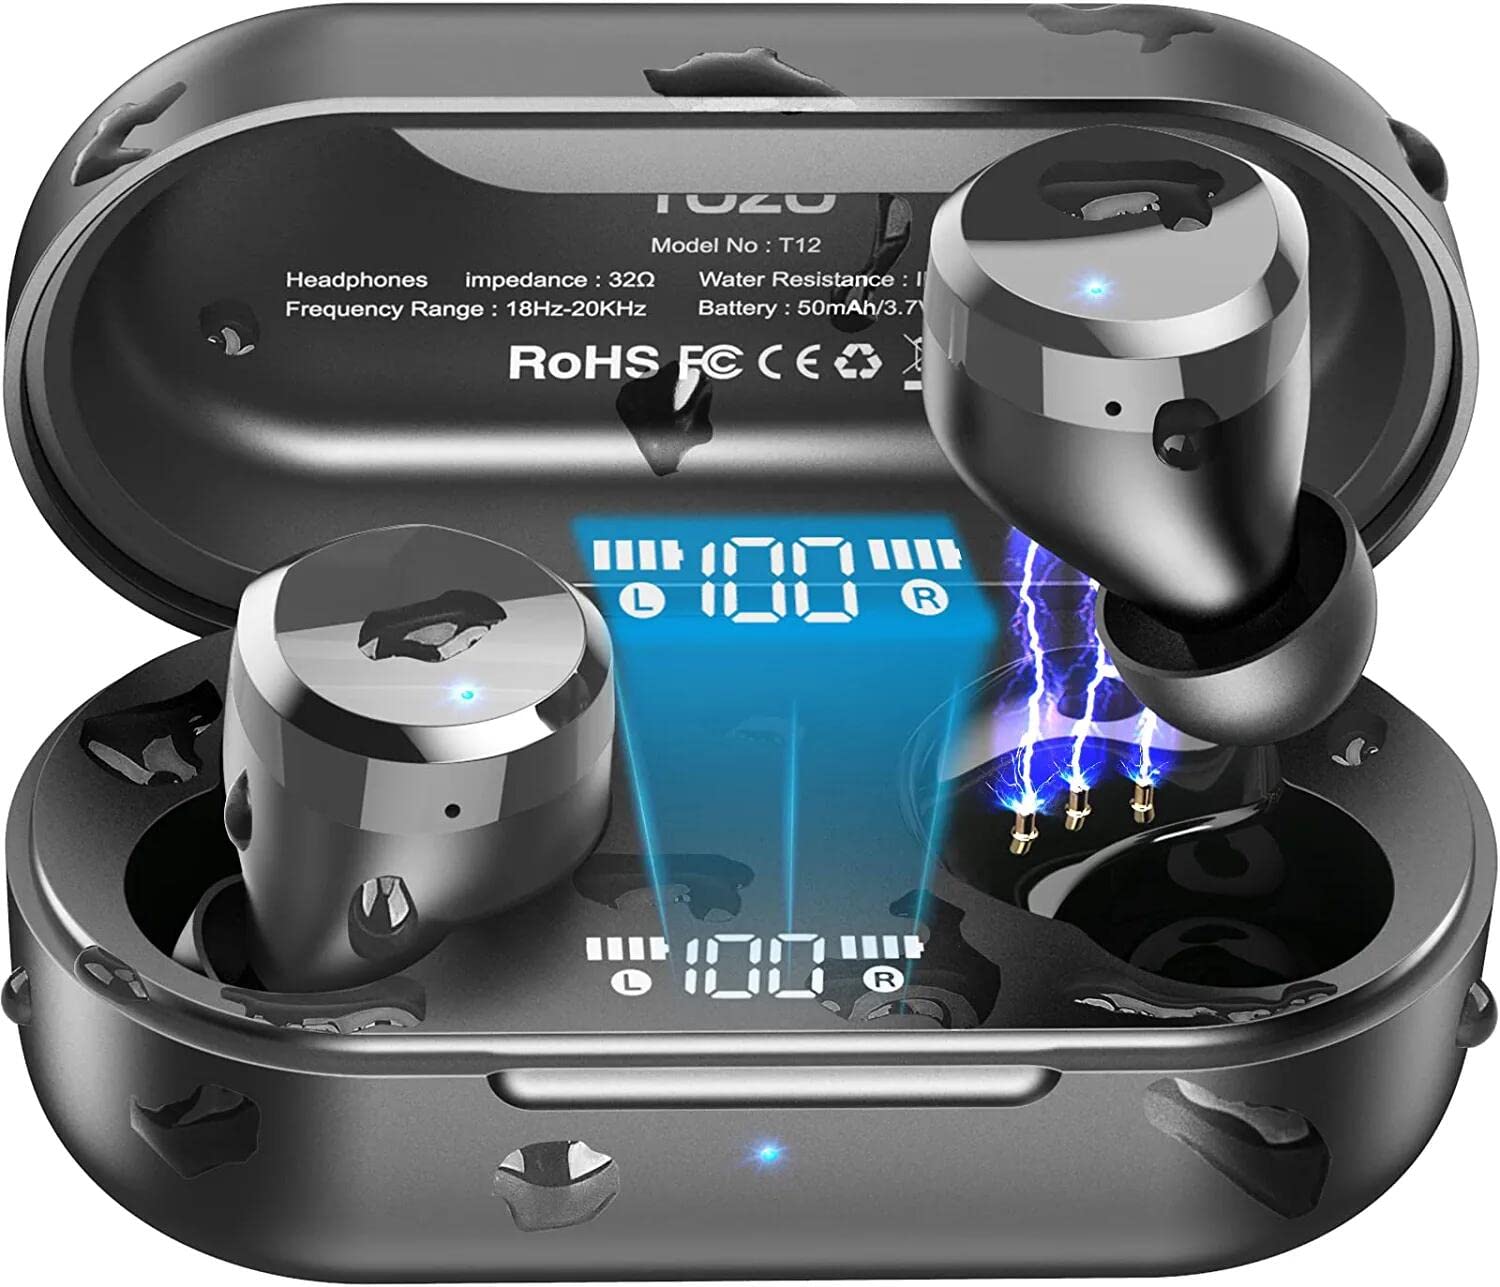 TOZO T12 2022 无线耳塞式蓝牙 5.3 耳机优质音质触摸控制 LED 数字显示无线充电盒耳机深黑色